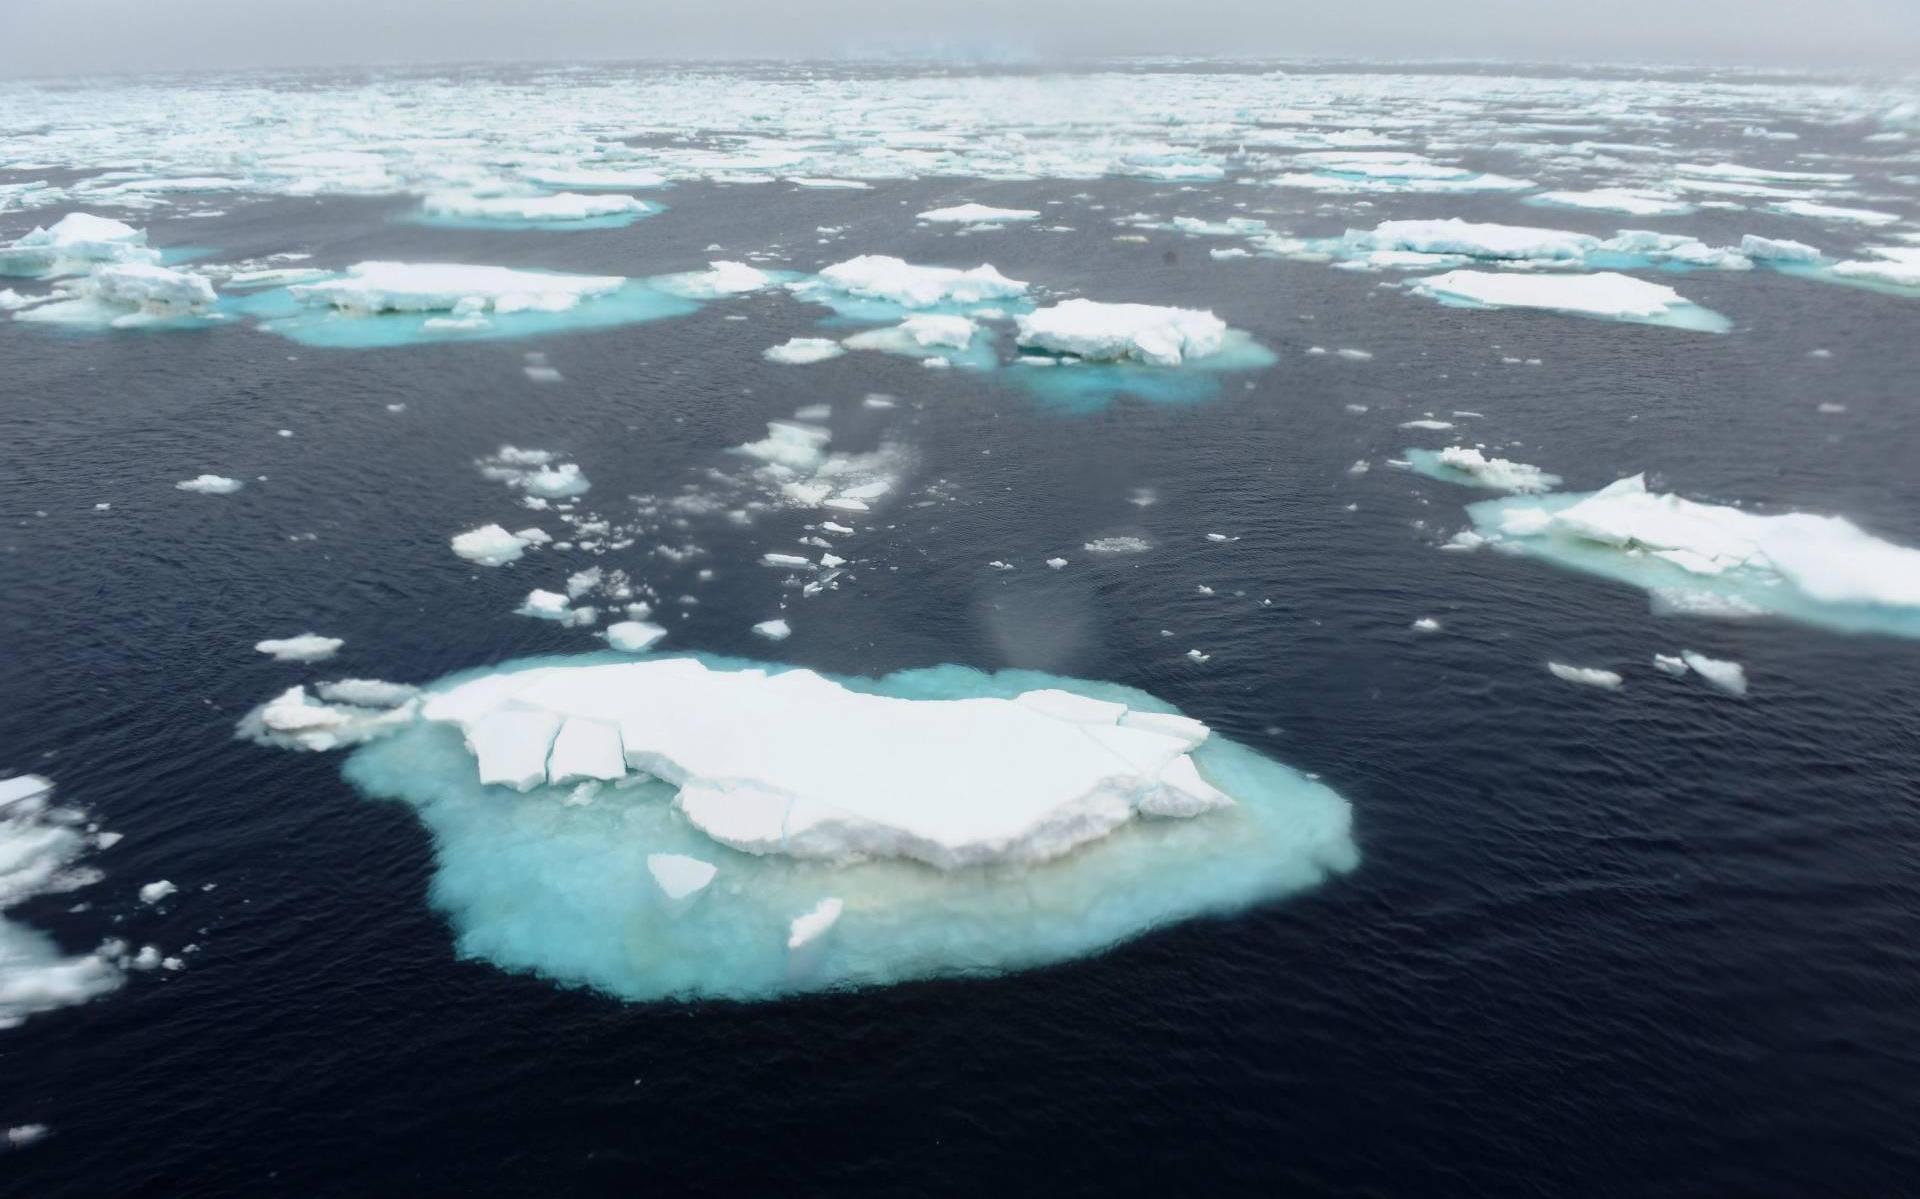 Stijging zeespiegel door opwarming aarde onomkeerbaar, zegt IPCC